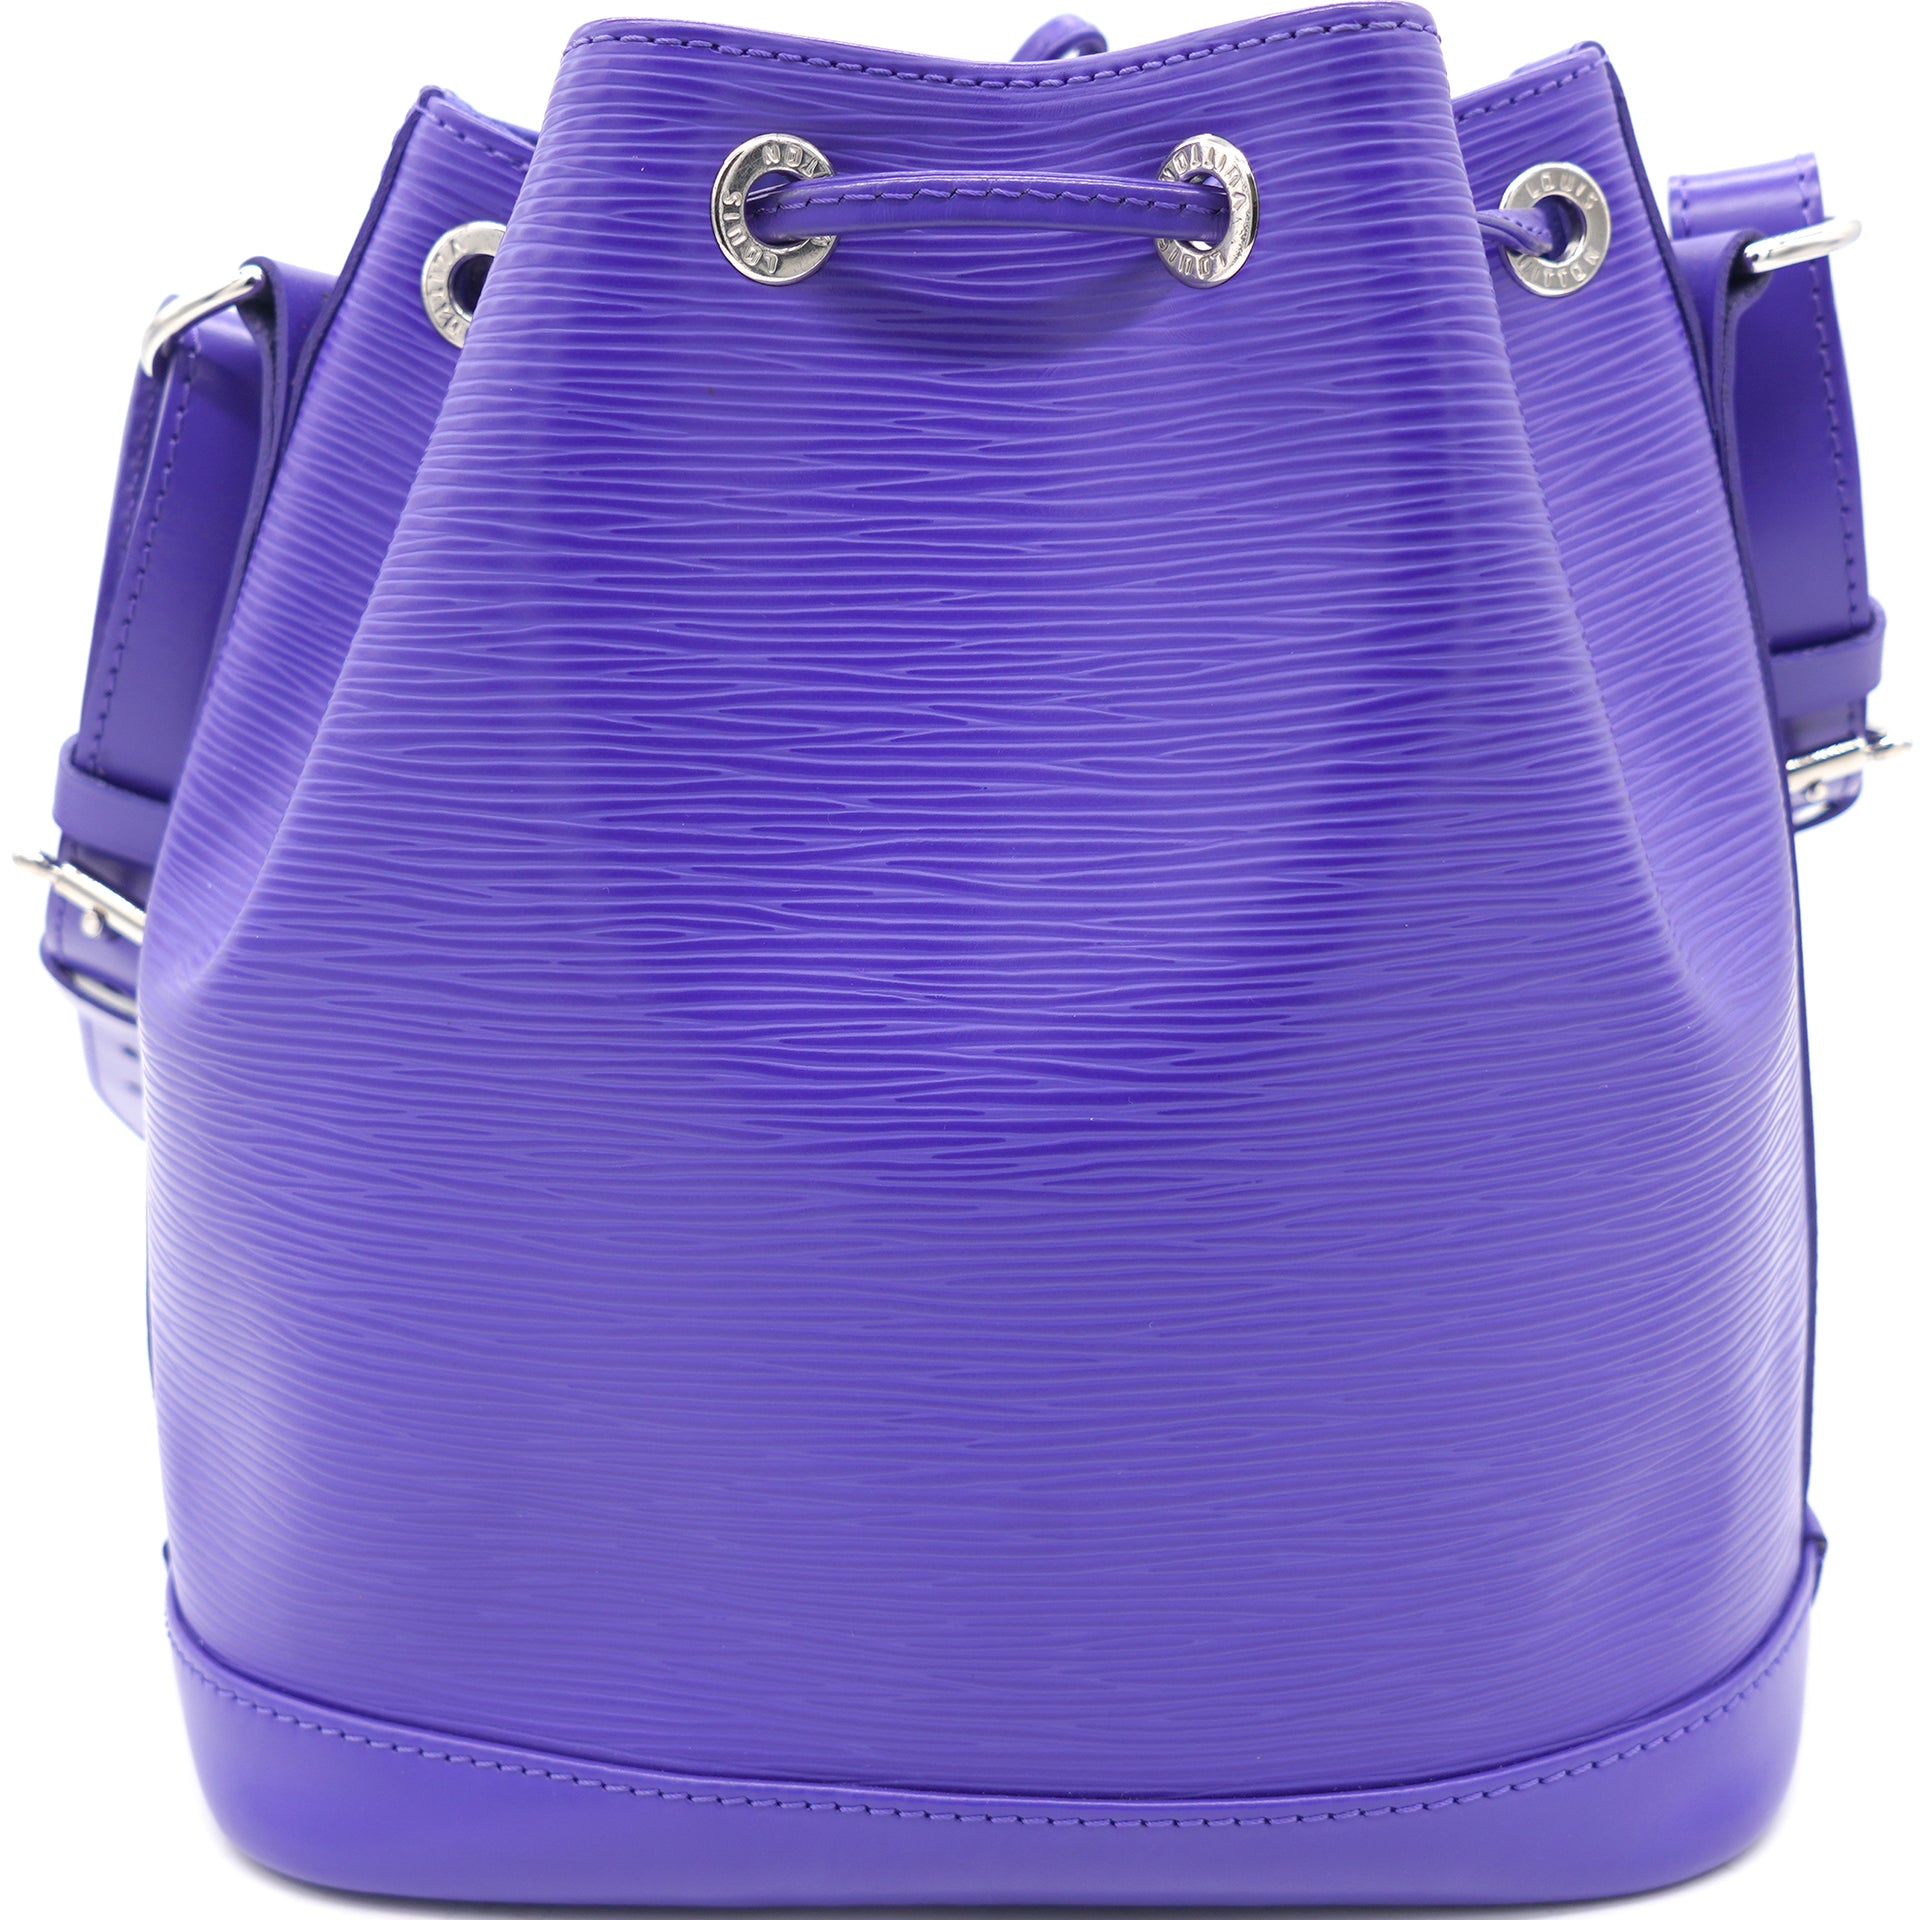 Louis Vuitton - Authenticated Boîte Chapeau Souple Handbag - Cloth Brown for Women, Never Worn